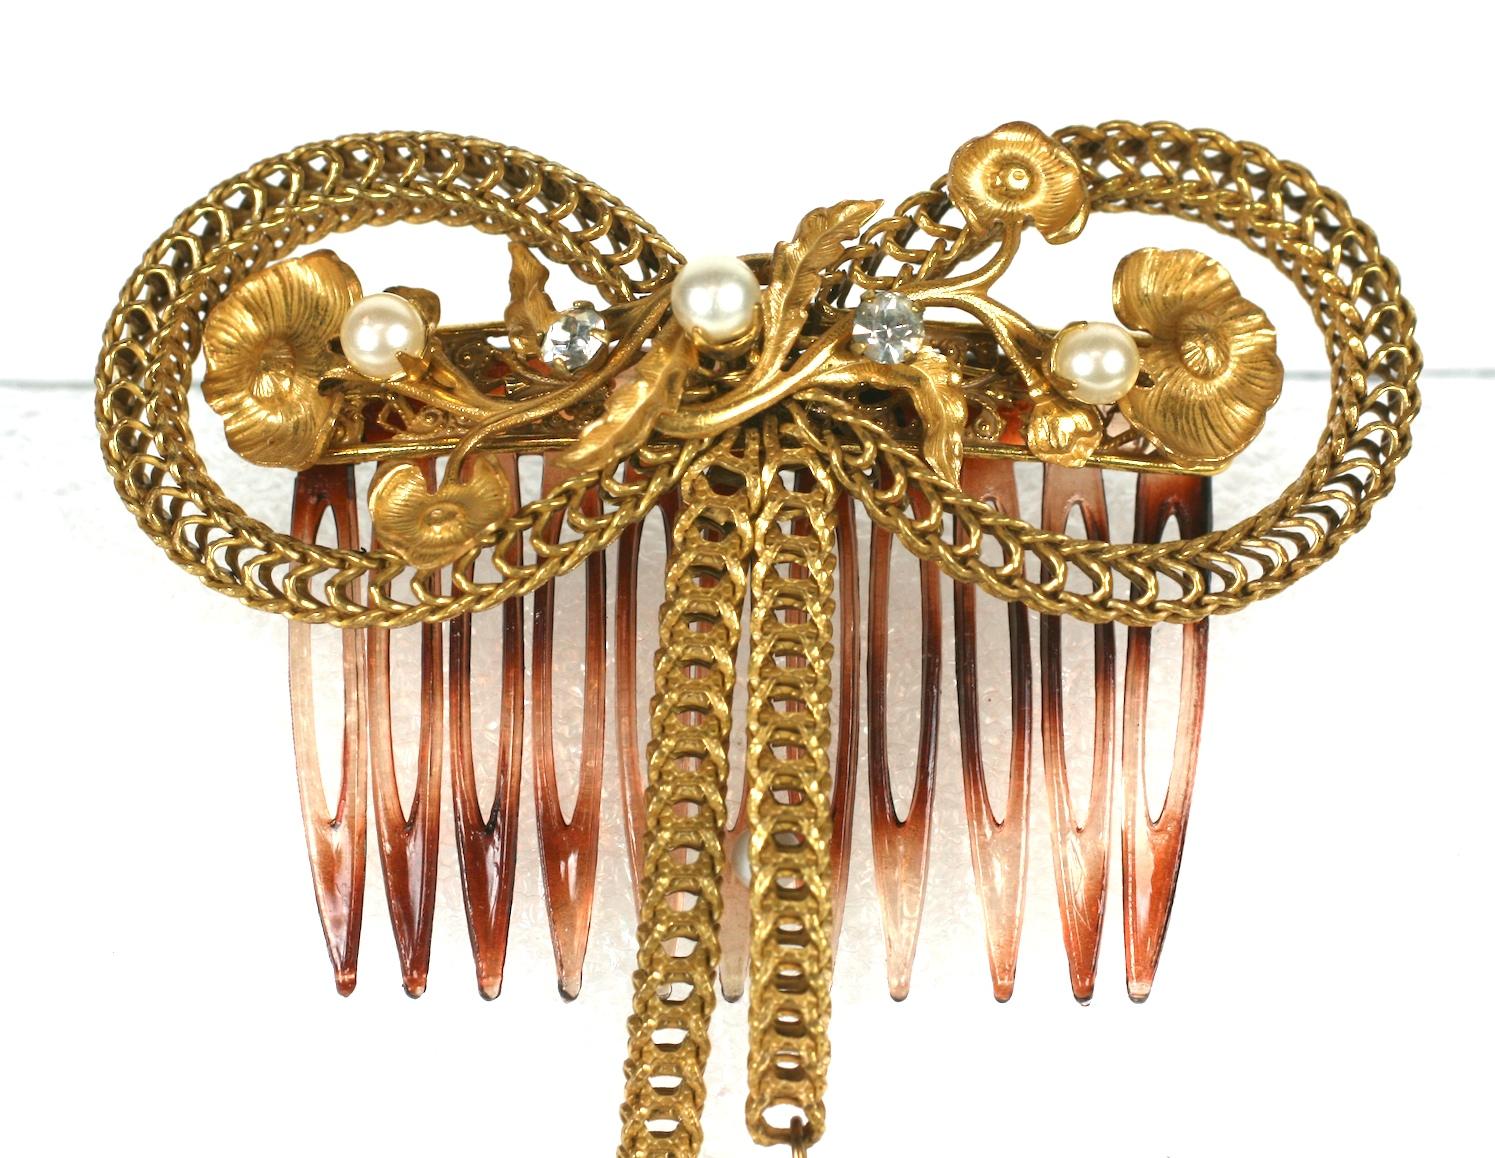 Peigne à cheveux Miriam Haskell, néo-Victorien.  Formé d'un nœud d'archet de chaîne en boîte dorée, signature de la Russie, avec des filigranes de branches florales et des perles rondes.
Les extrémités de l'arc sont détaillées par des perles